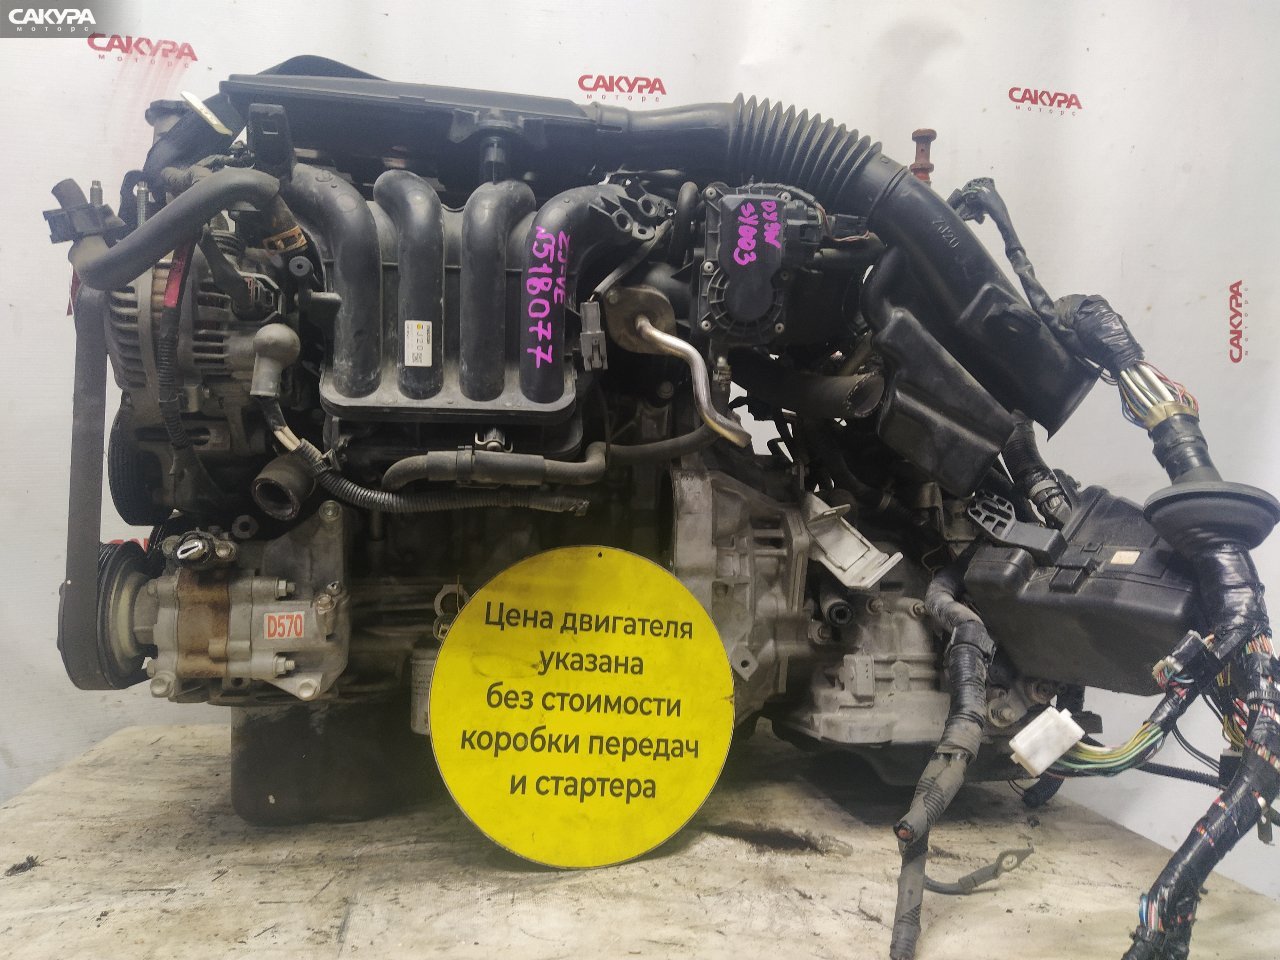 Двигатель Mazda Demio DY3W ZJ-VE: купить в Сакура Красноярск.